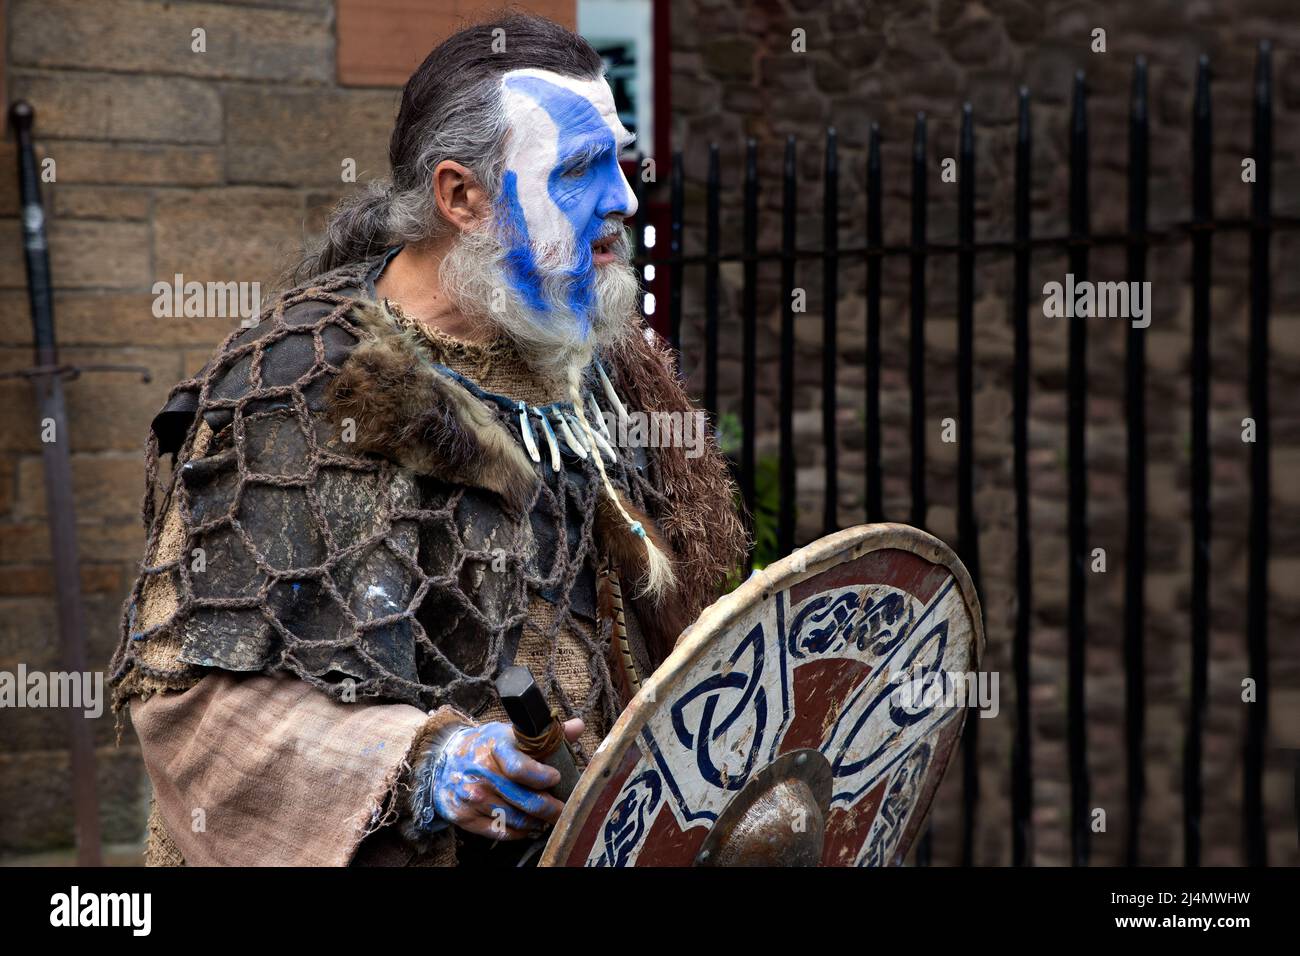 L'acteur qui agit William Wallace héros écossais. Edinburgh Festival Fringe 2021 - Ven, 6 août - lundi, 30 août - Edinburgh Scotland. ROYAUME-UNI. Banque D'Images